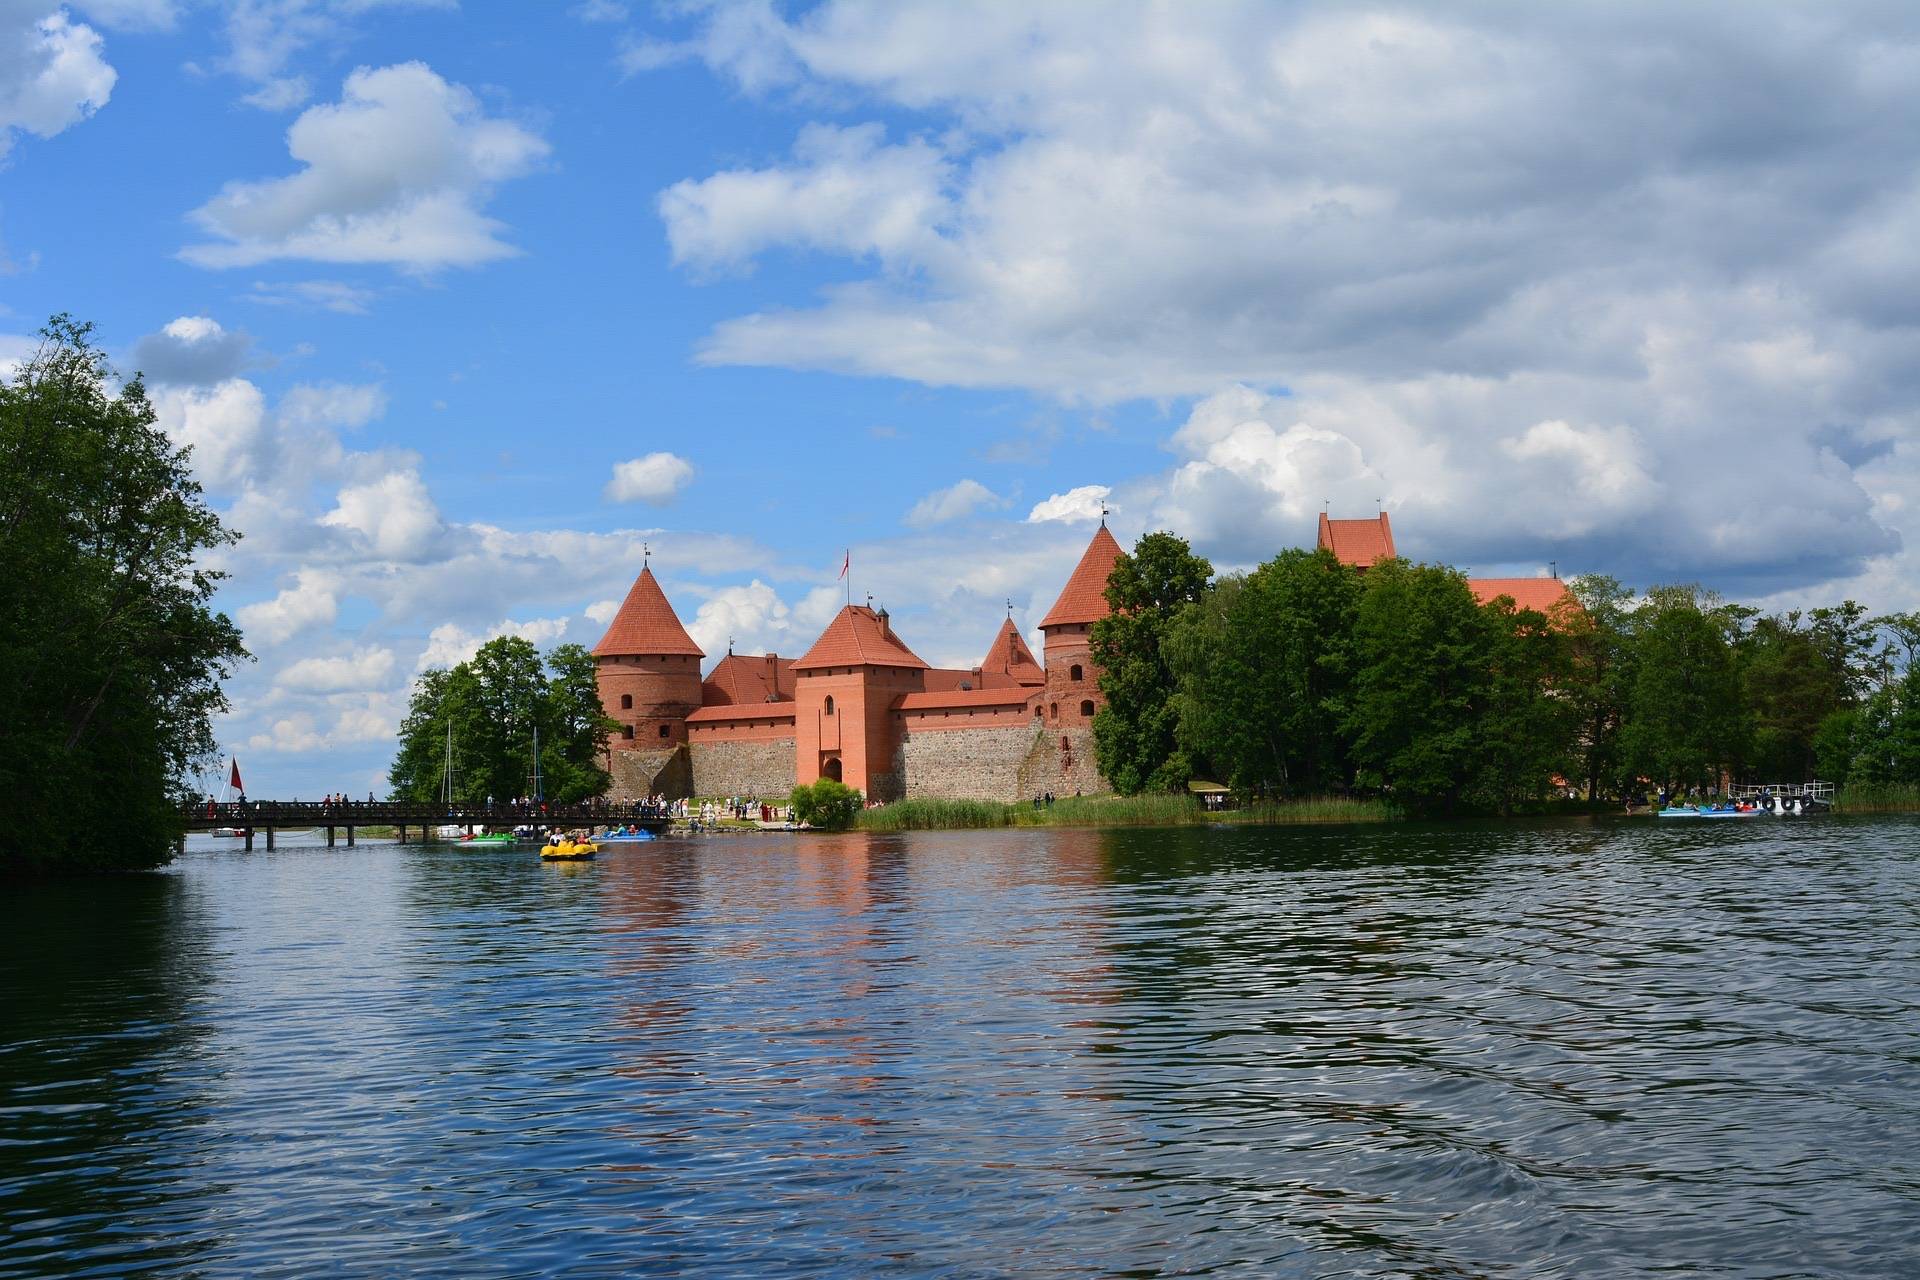 Suggerimento: scoperta di un castello sul lago, Trakai